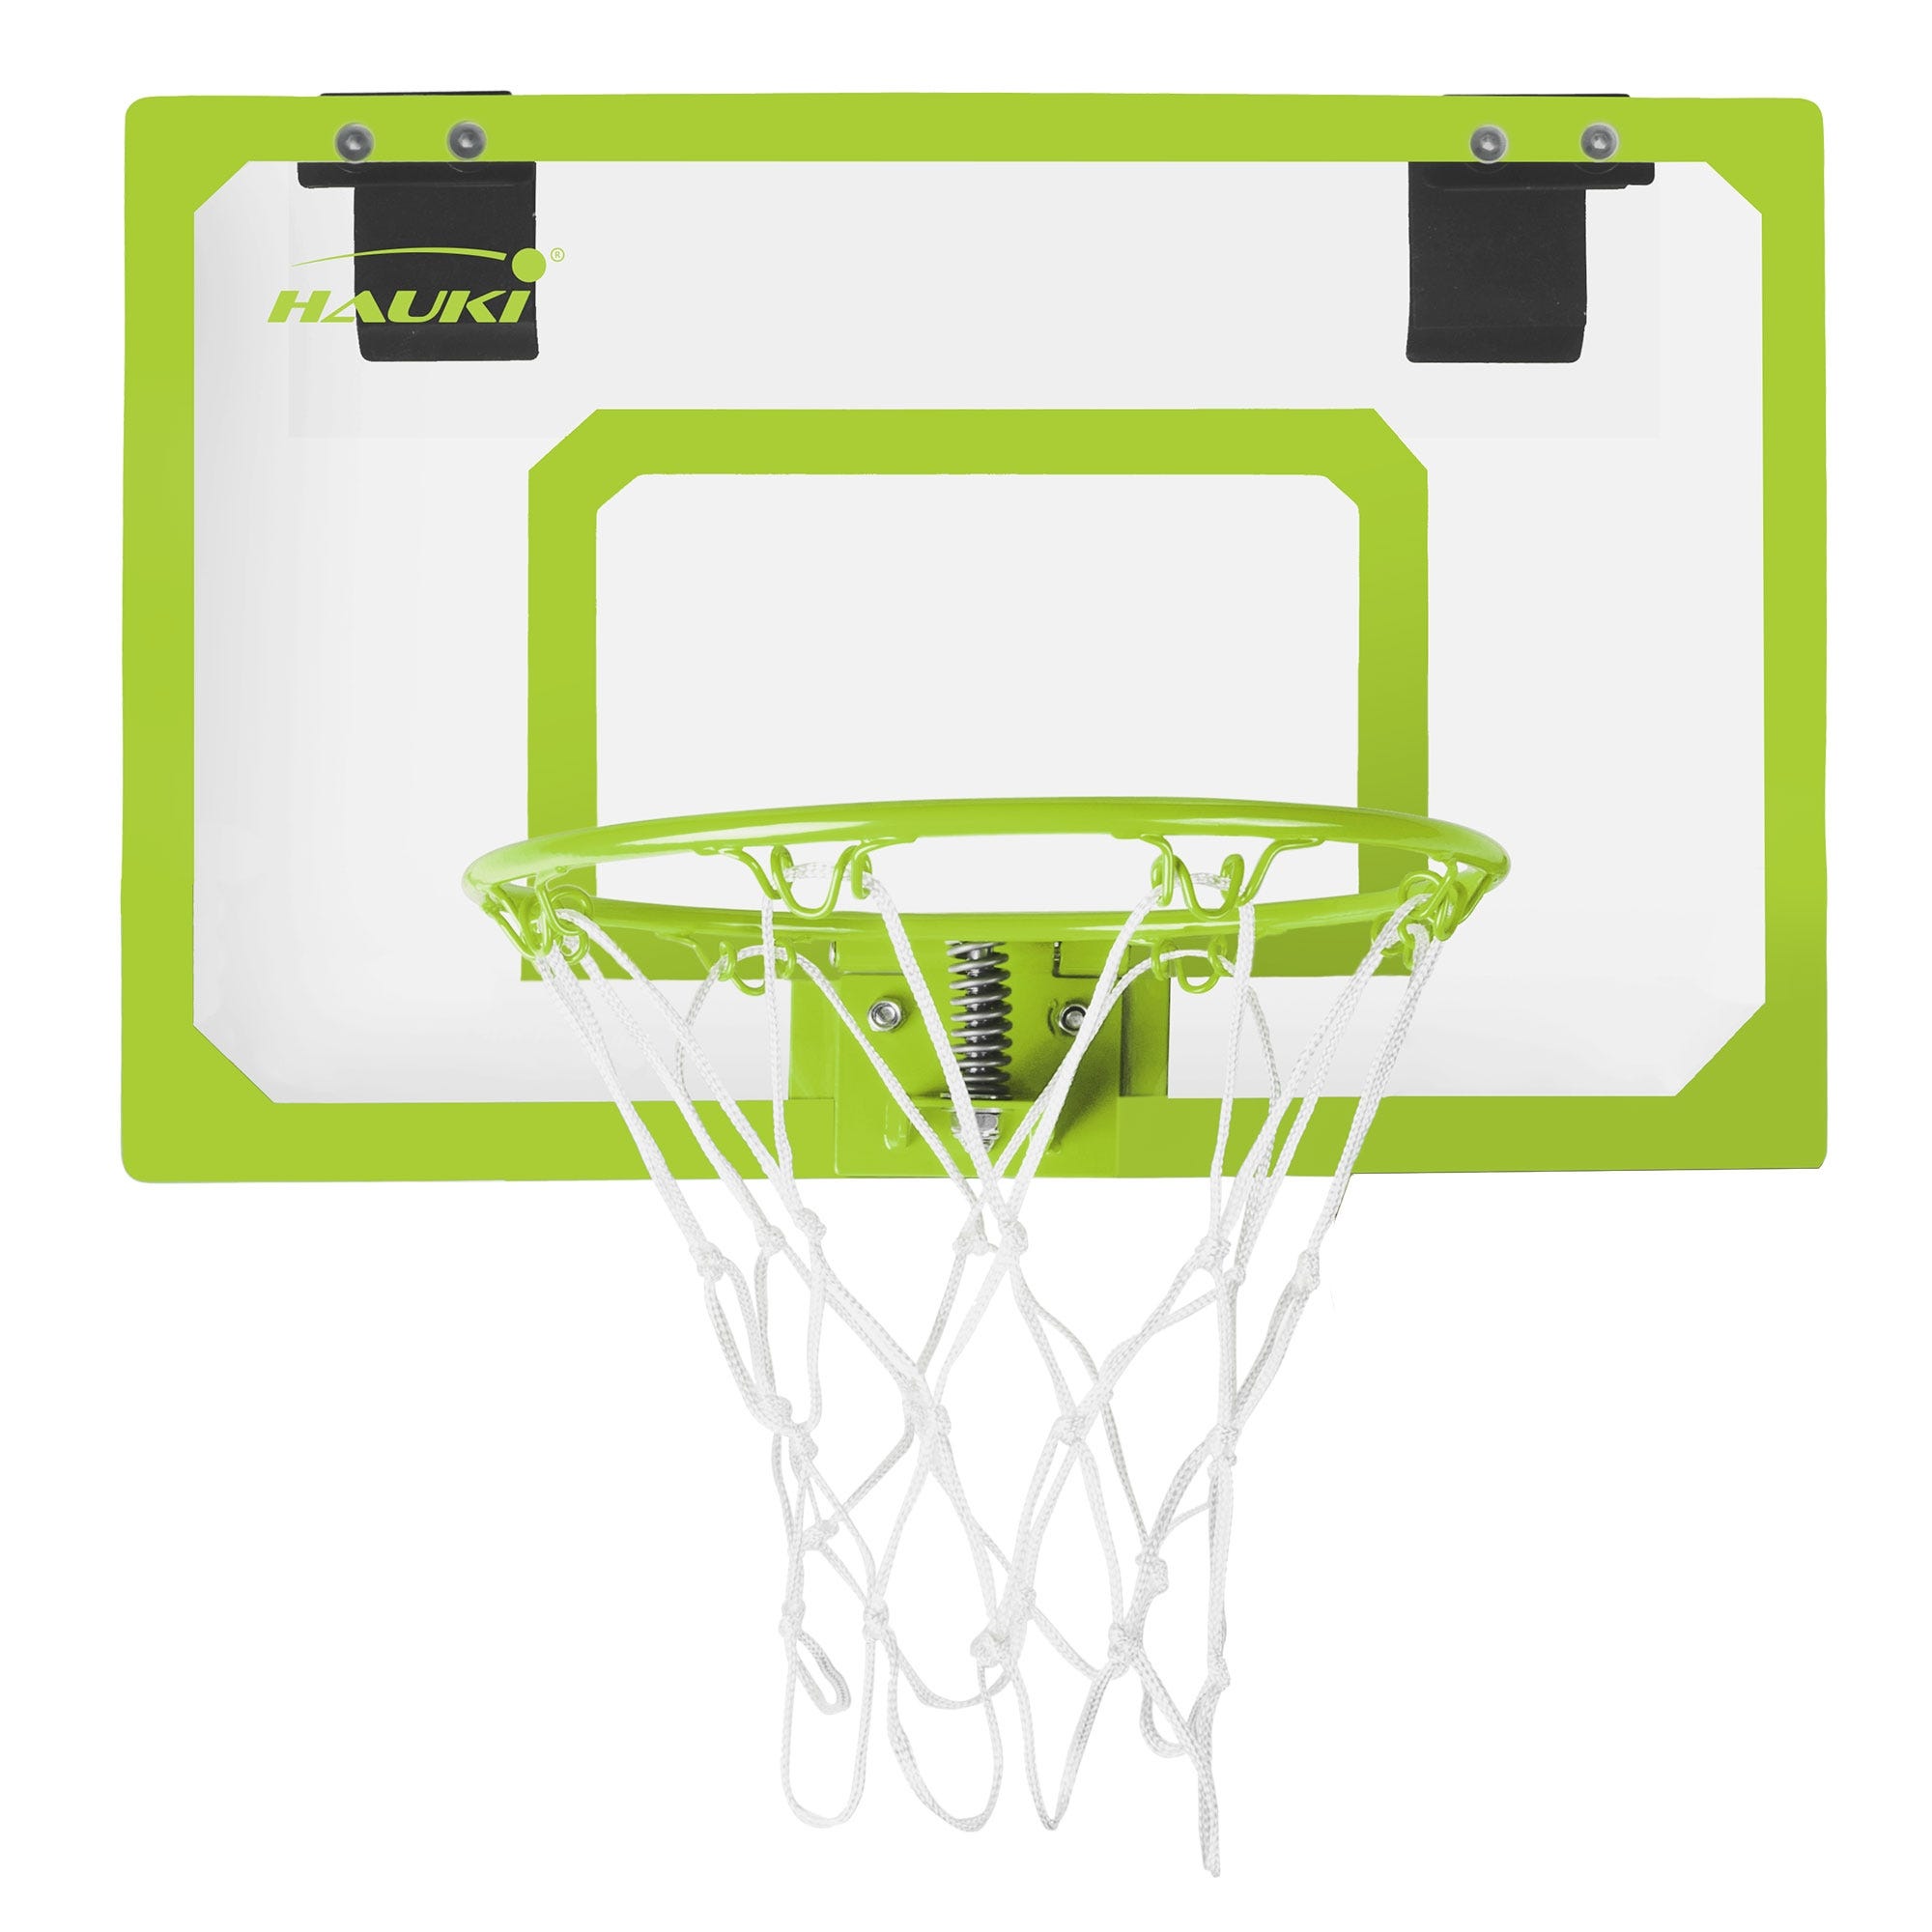 Mini panier de basket d'intérieur 40 x 30 cm pour enfants avec 3 balles et  pompe